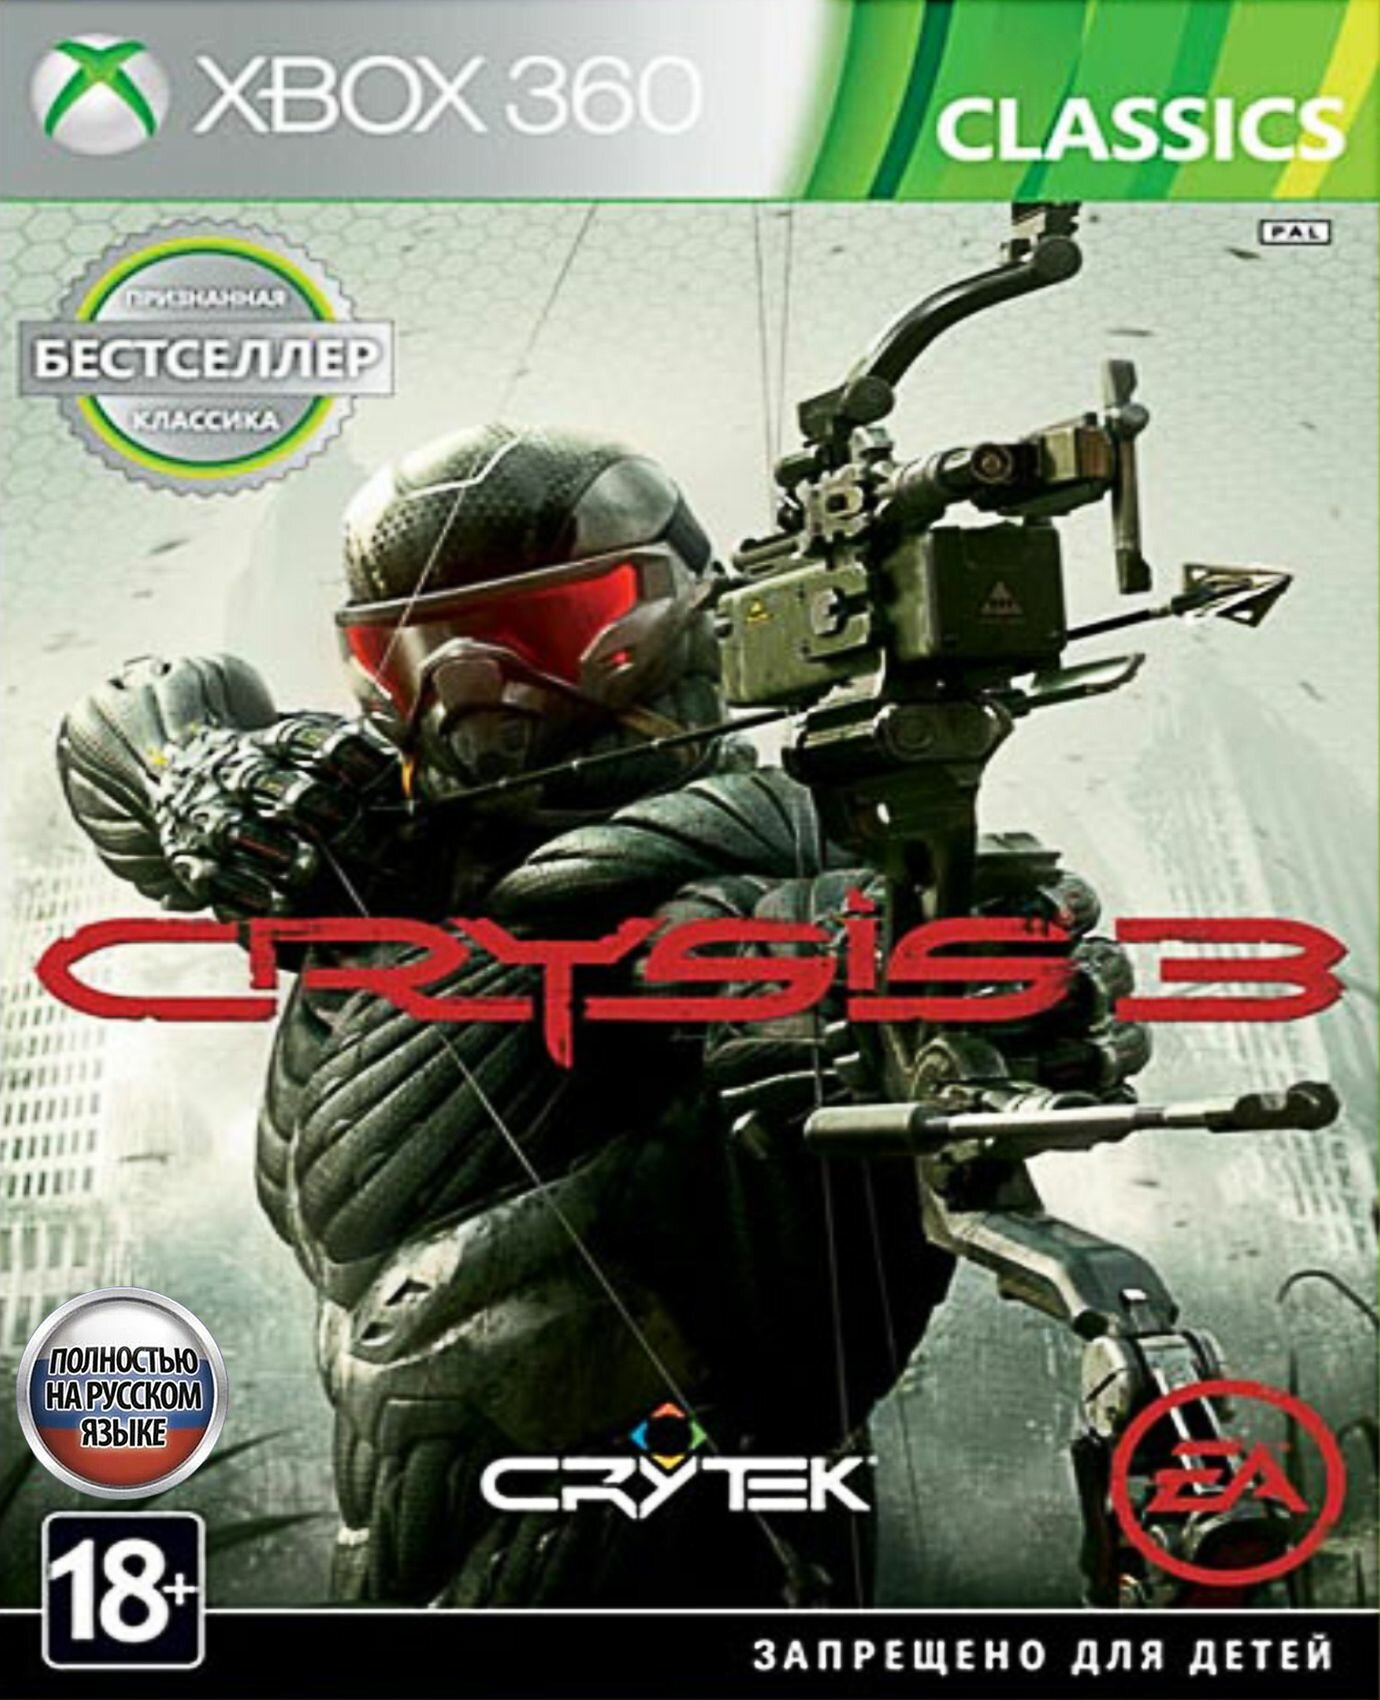 Crysis 3 Полностью на русском Видеоигра на диске Xbox 360